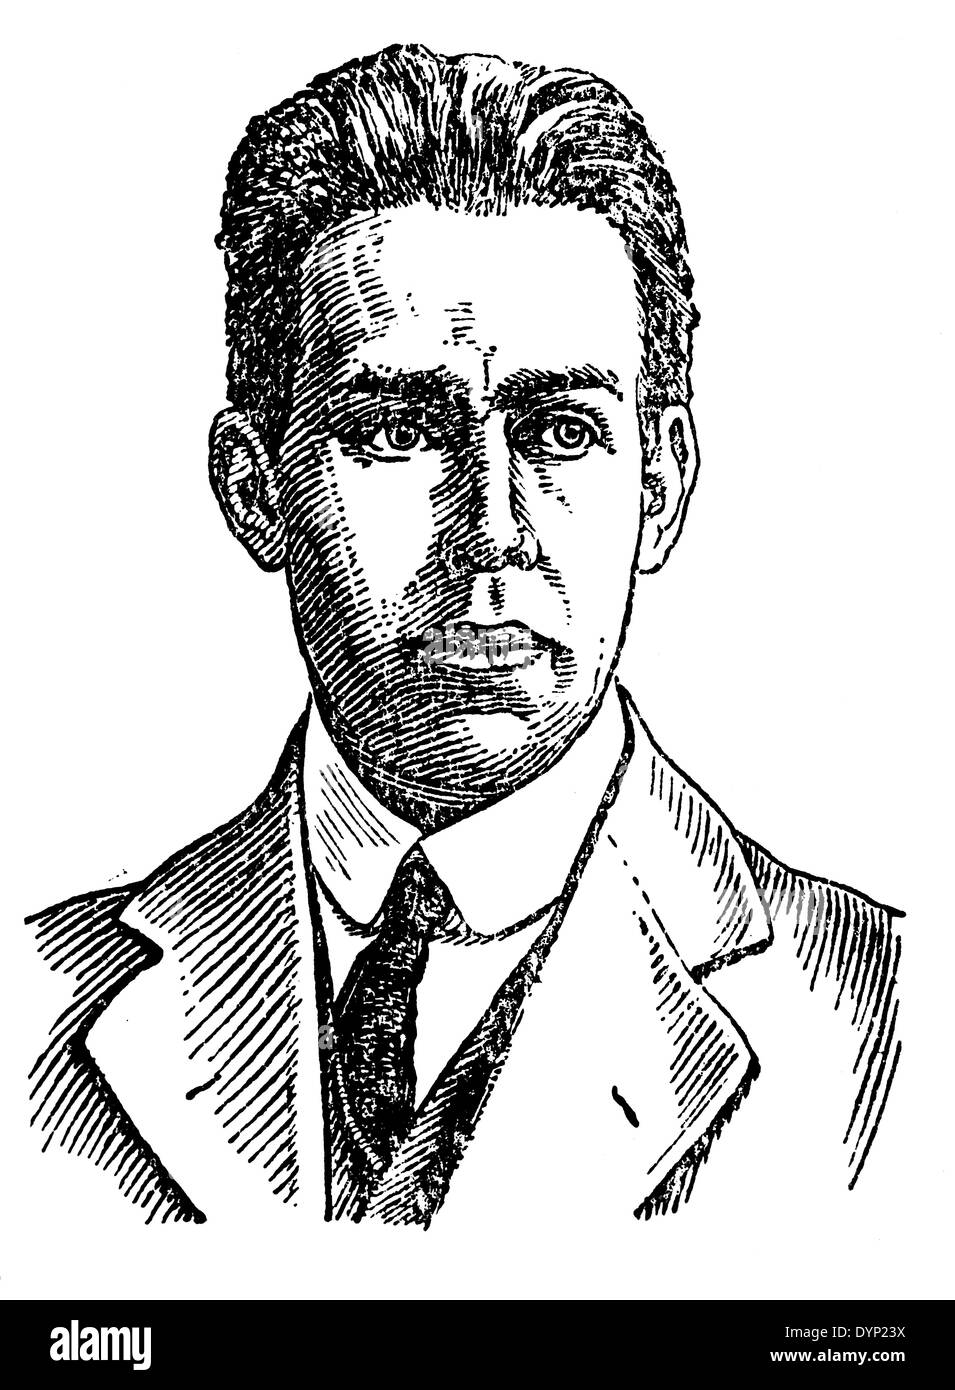 Niels Bohr (1885-1962), dänischer Atomphysiker, Nobelpreisträger in Physik, Illustration aus sowjetischen Enzyklopädie, 1927 Stockfoto